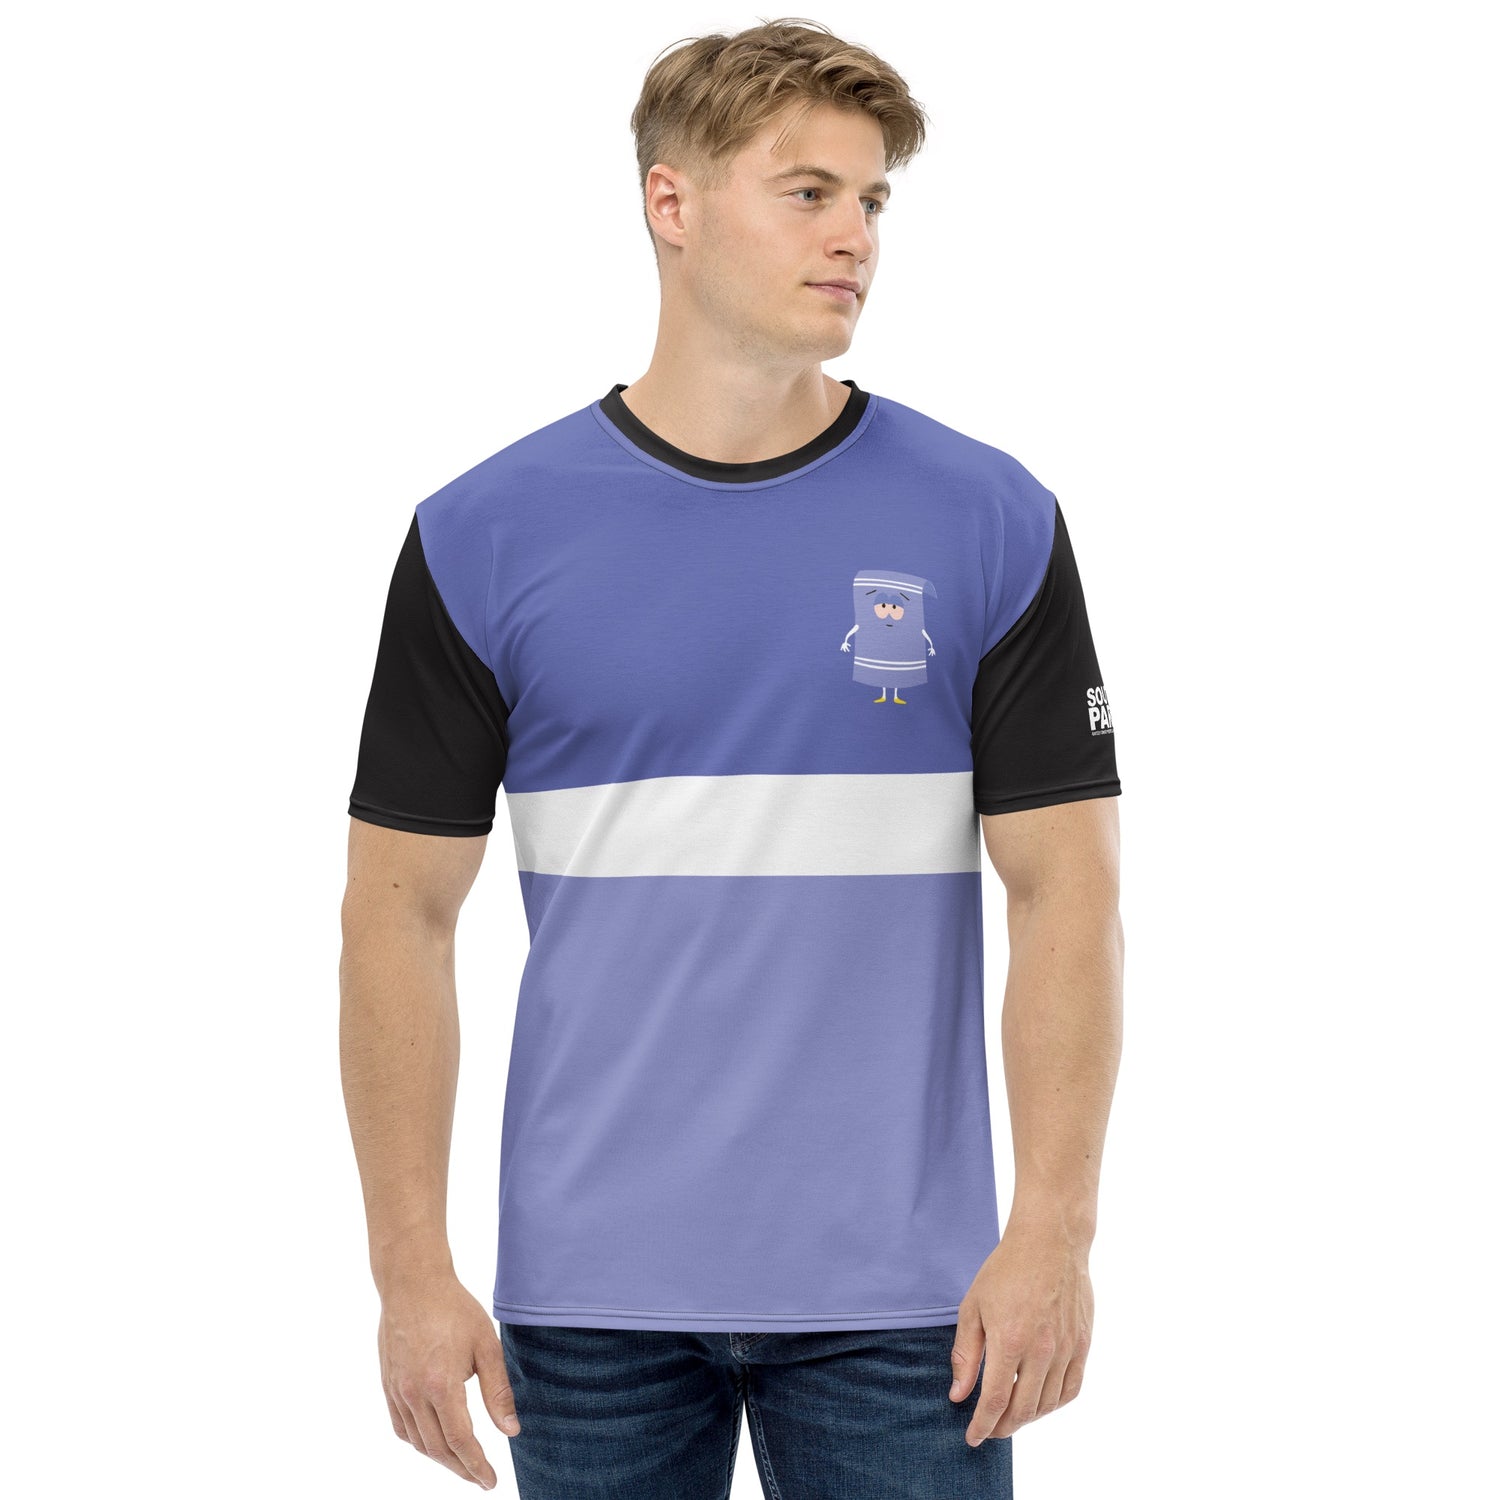 South Park Towelie Color Block Unisex Short Sleeve T-Shirt